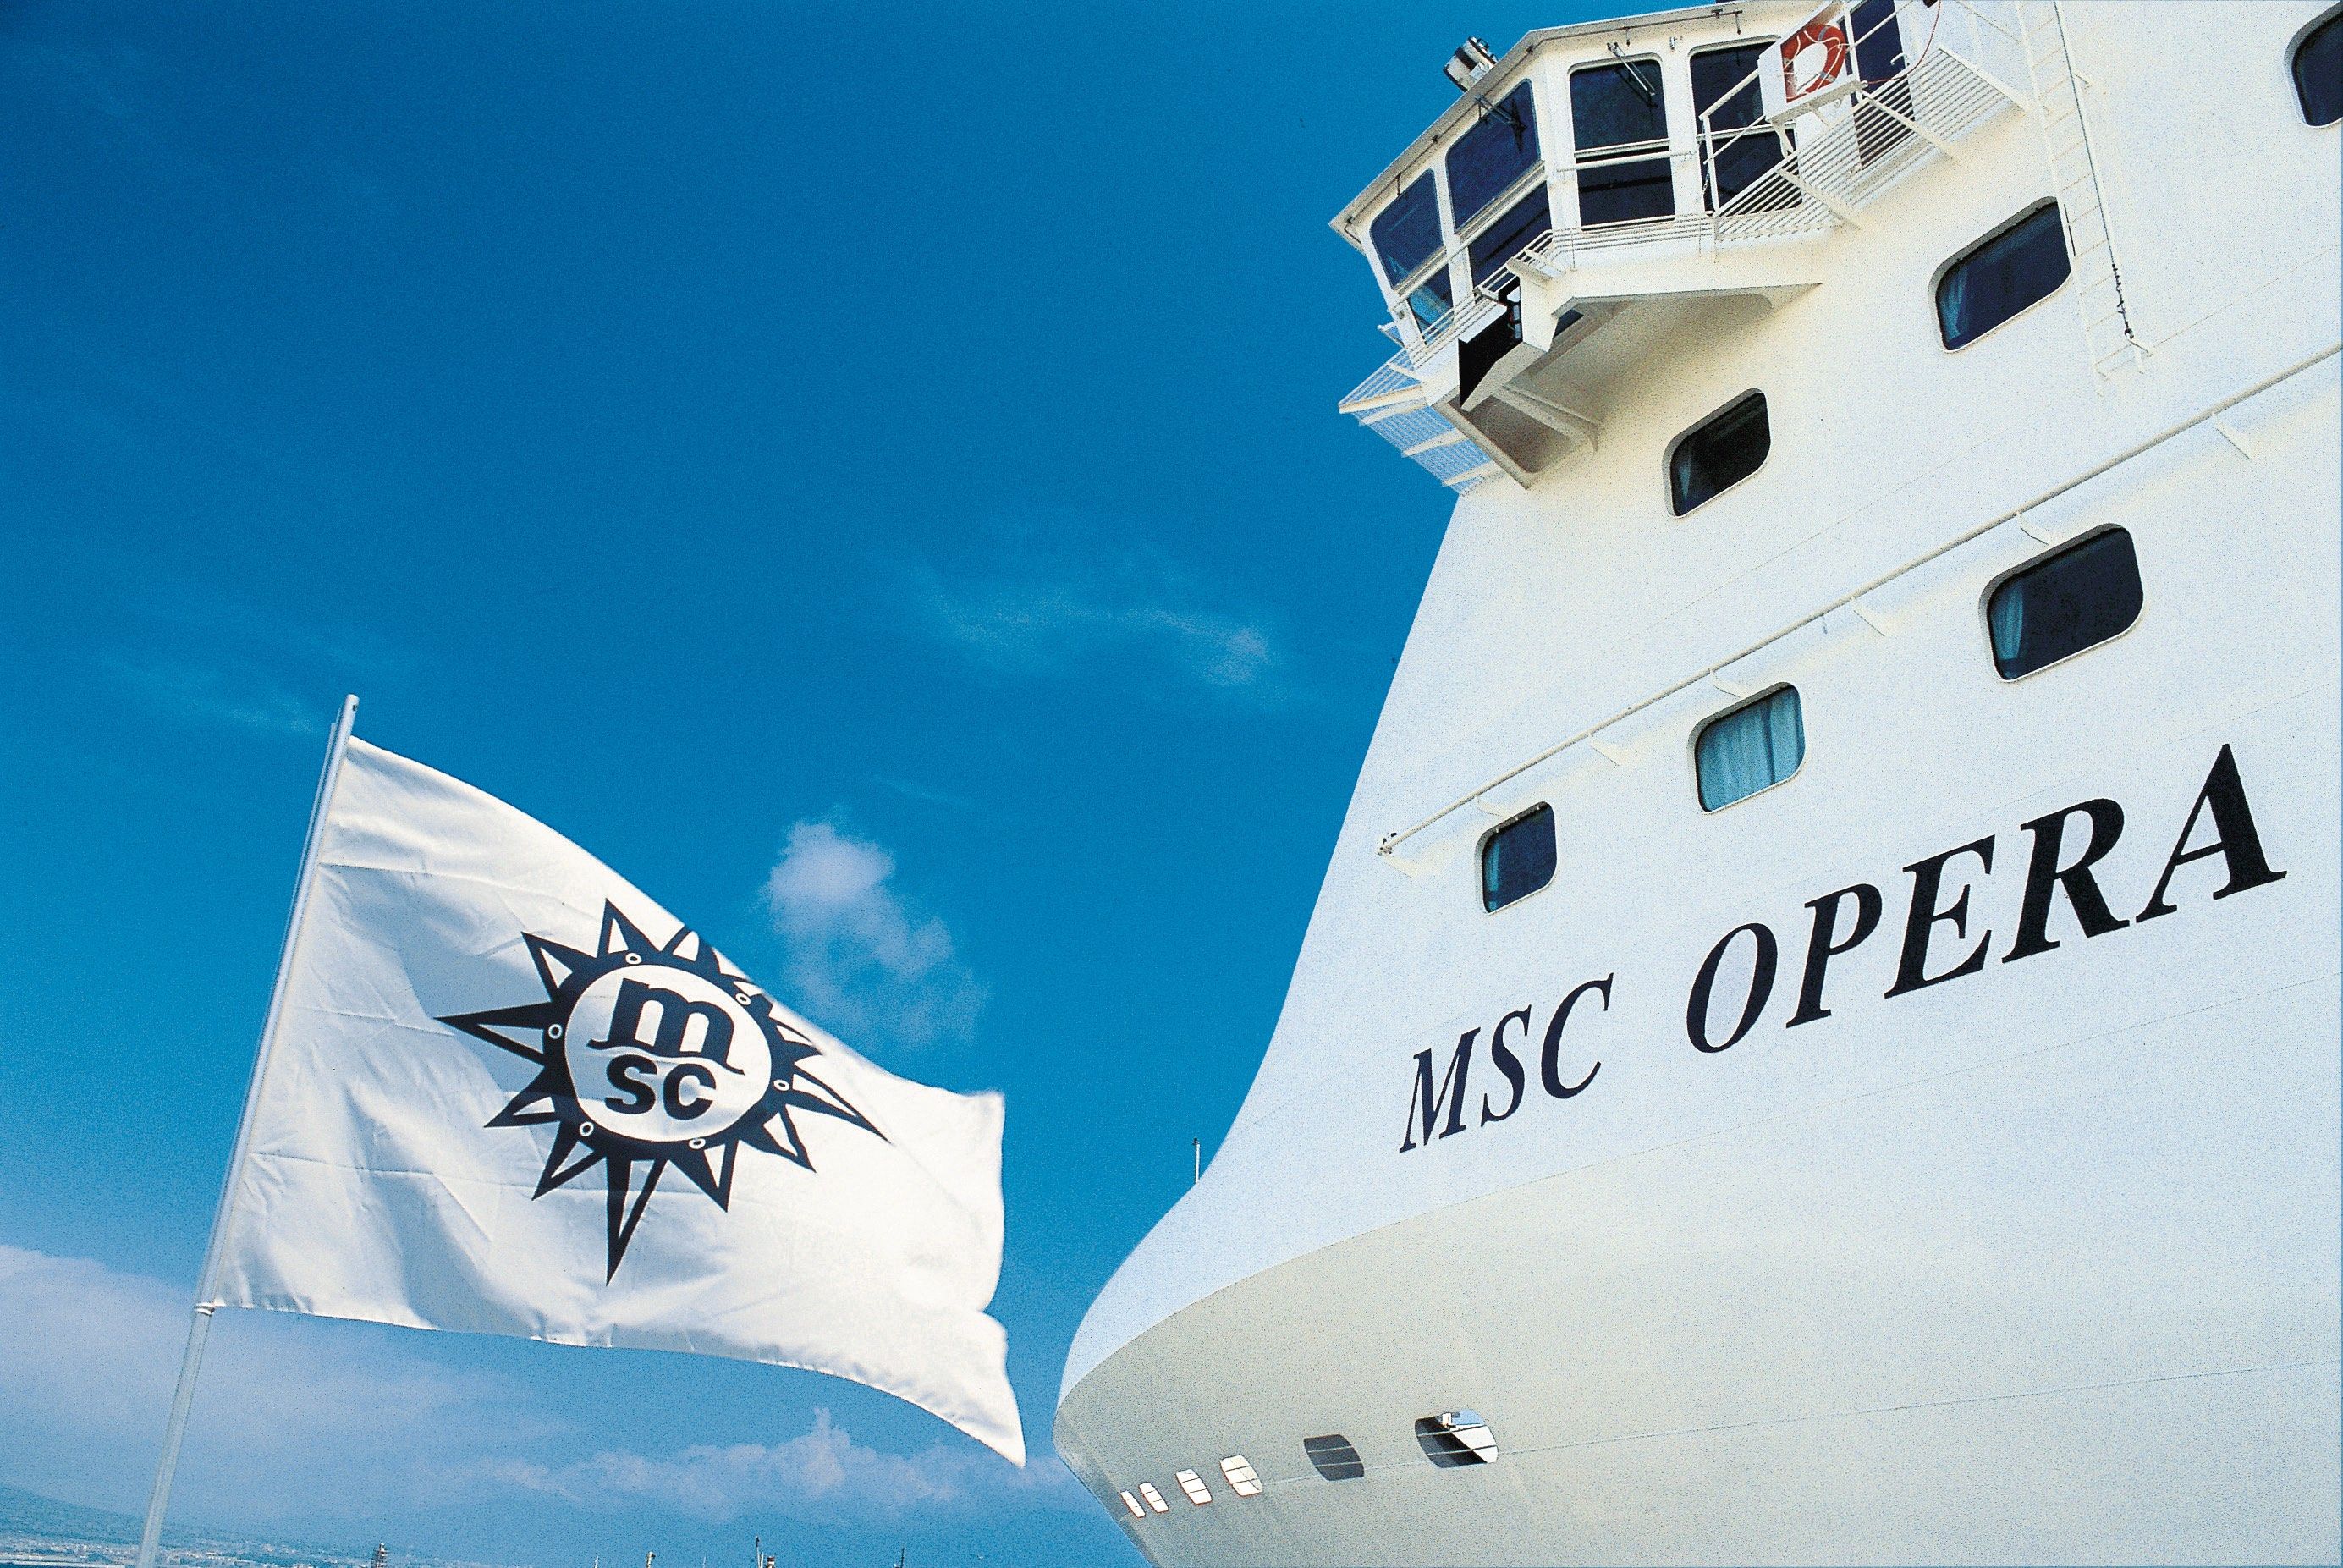 El MSC Opera, de MSC Cruceros